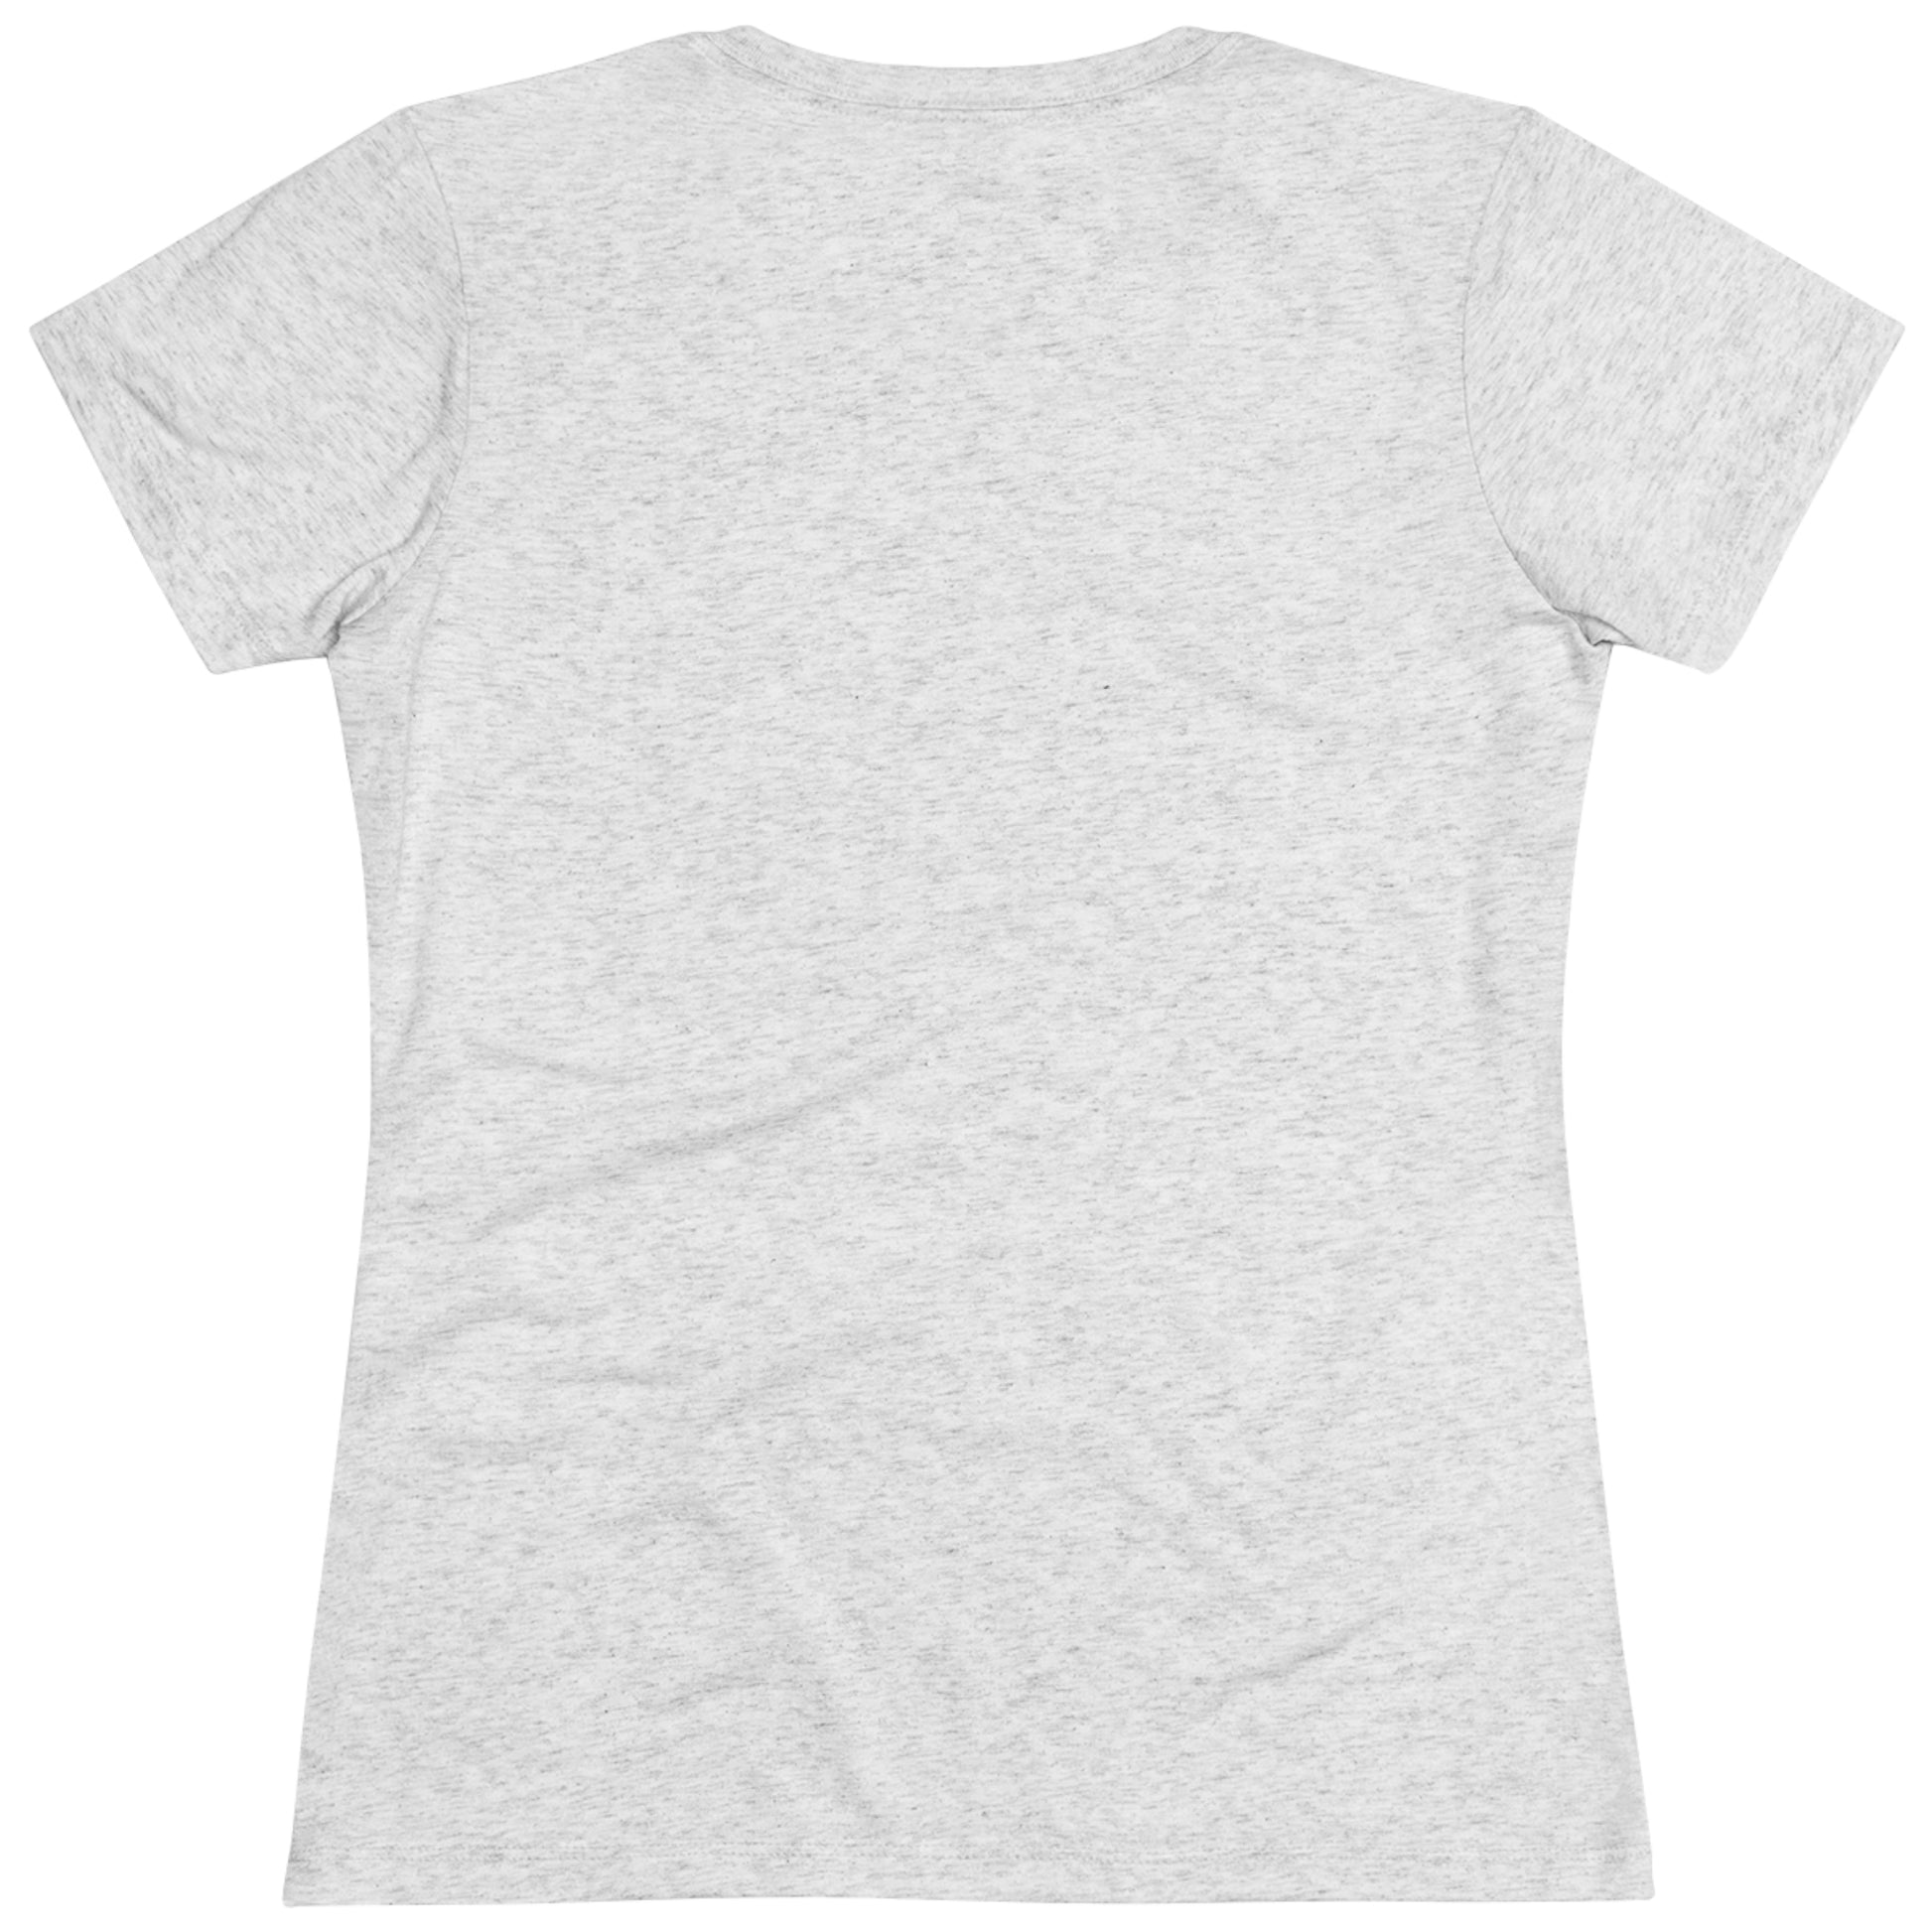 Women's "Retro Utah" T-Shirt - Utah.com